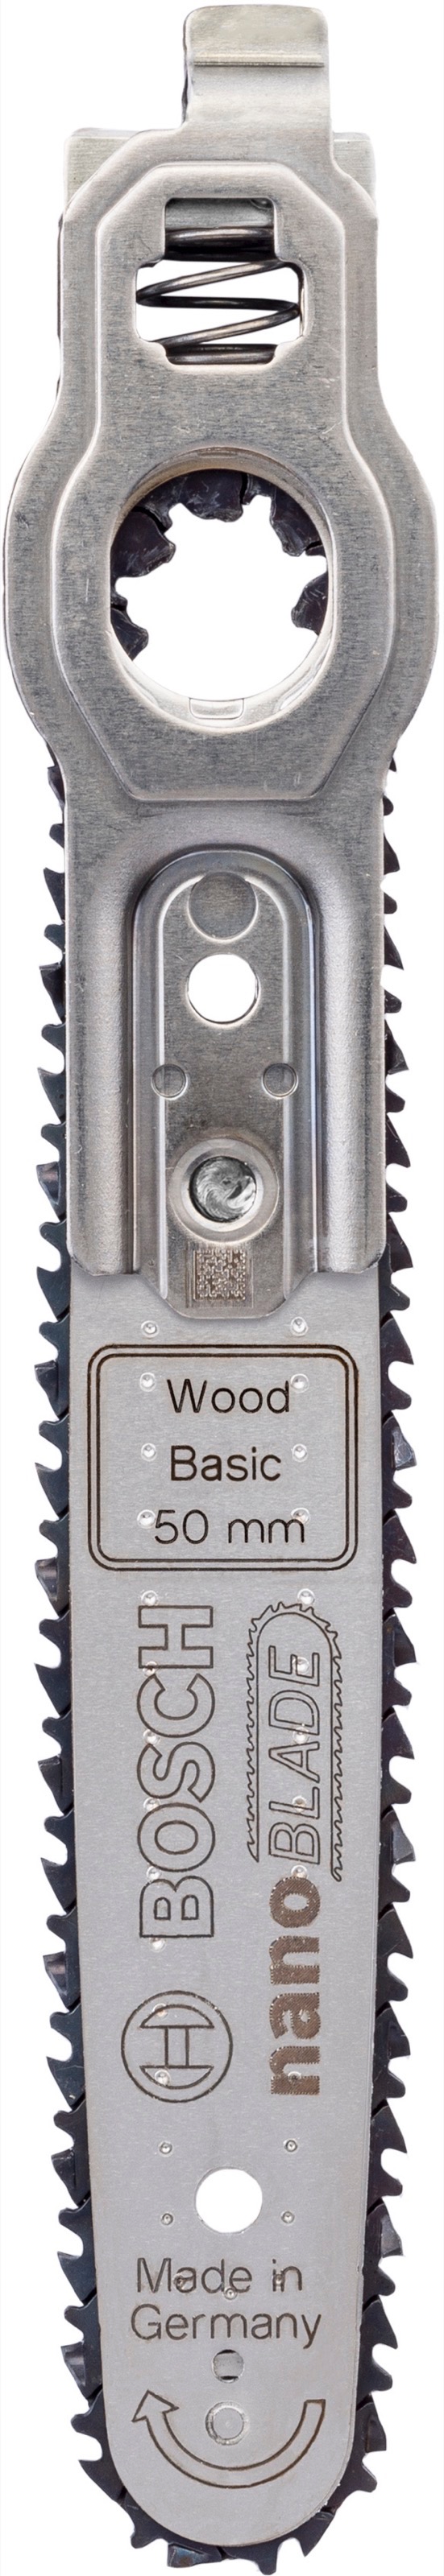 nanoBLADE Wood Basic 50